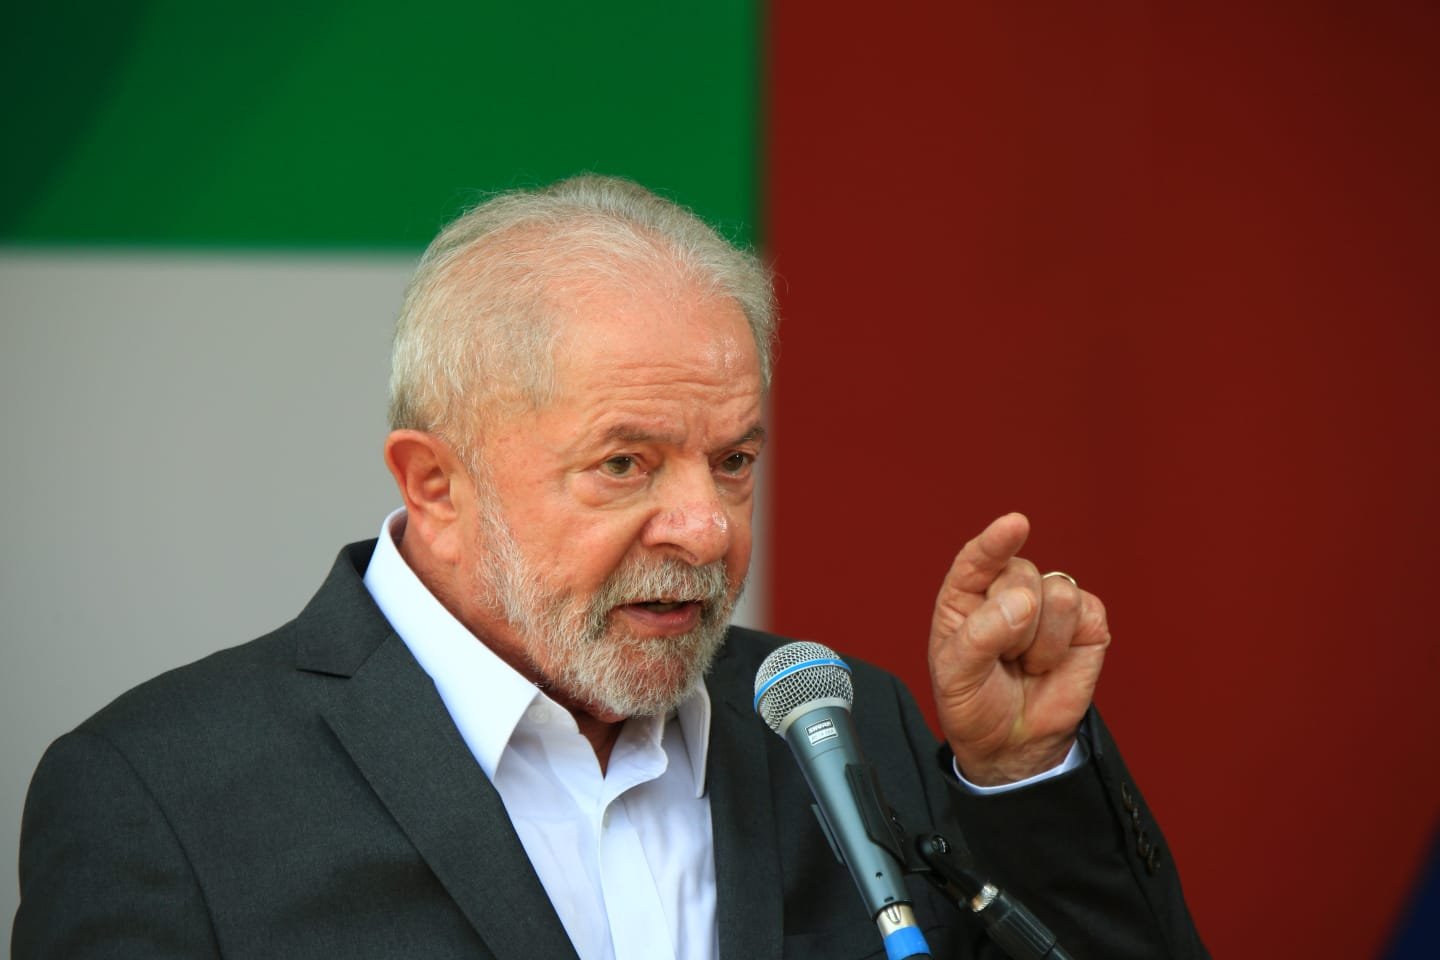 Presidente eleito, Lula, fala com a imprensa sobre a semana em Brasília e sobre o governo de transição. Na imagem, ele segura um microfone - Metrópoles